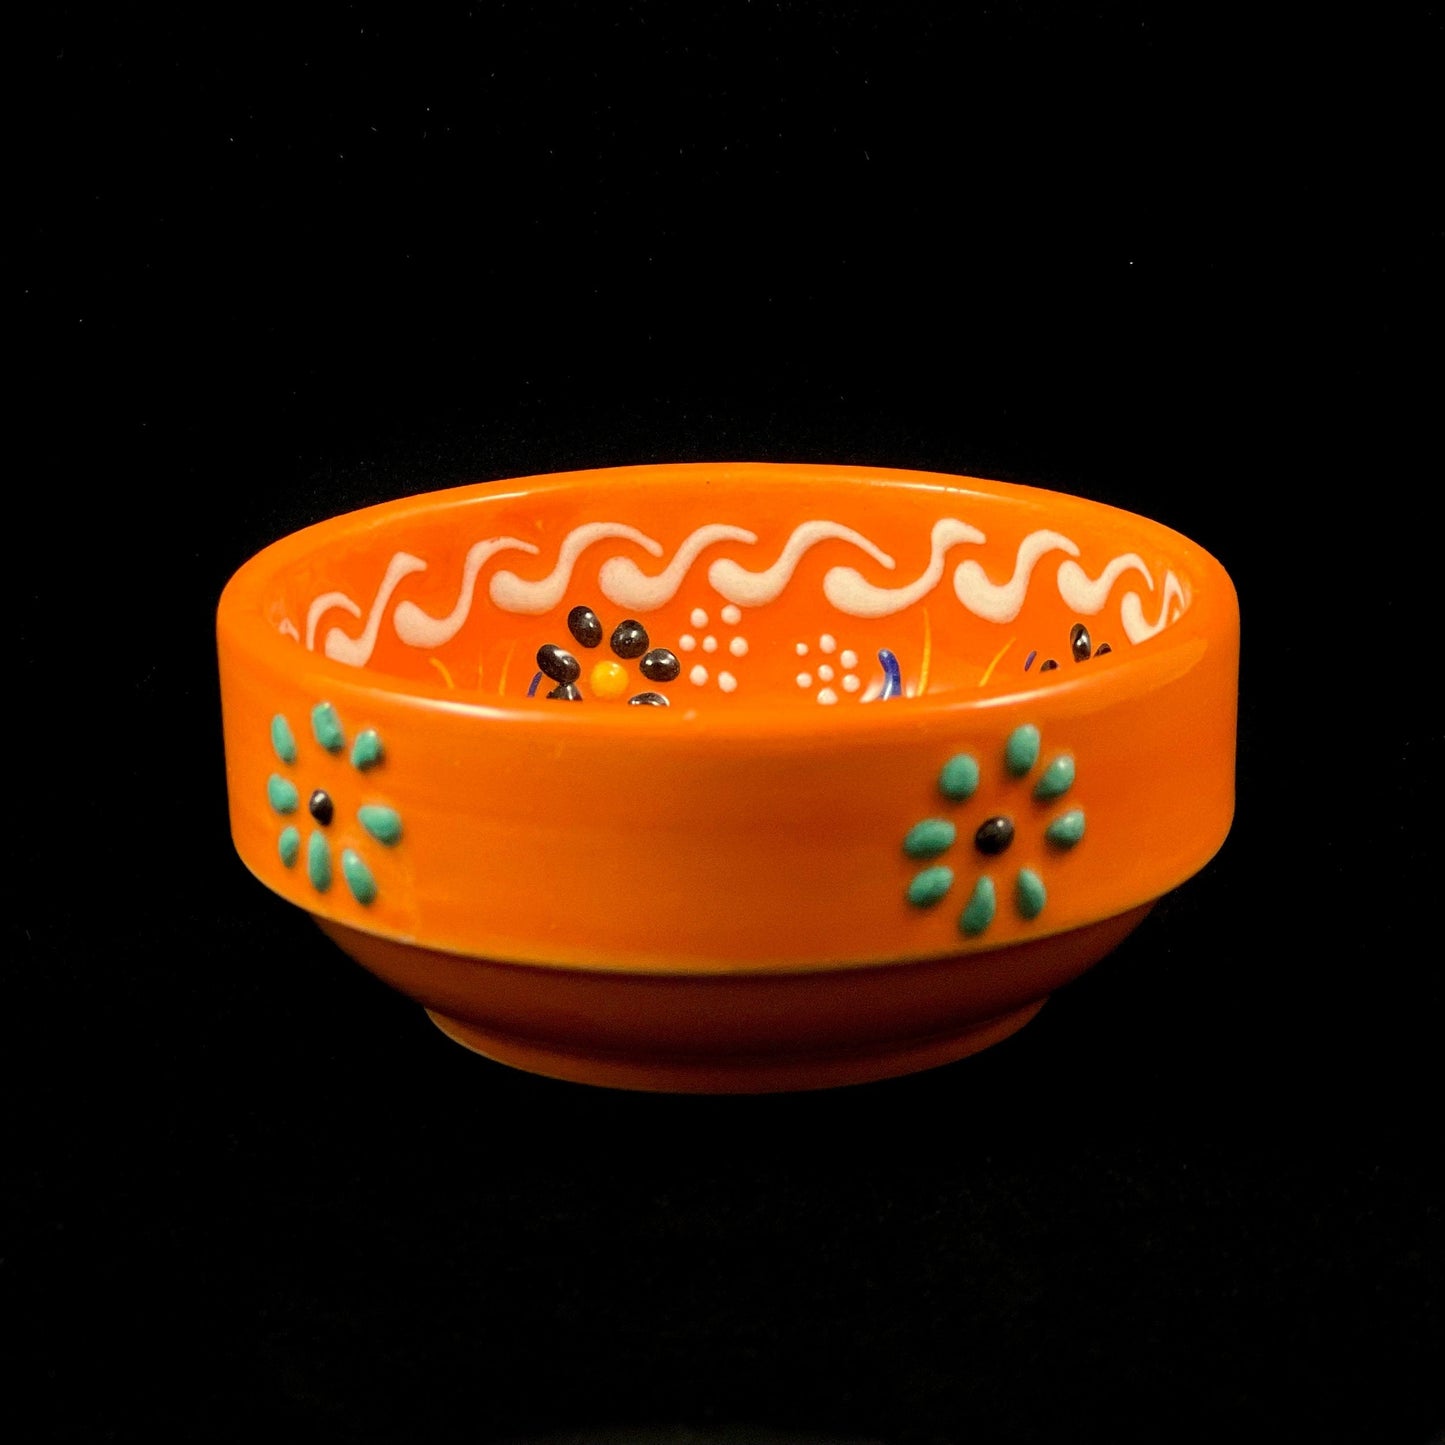 Handmade Sugar Bowl, Functional and Decorative Turkish Pottery, Cottagecore Style, Orange